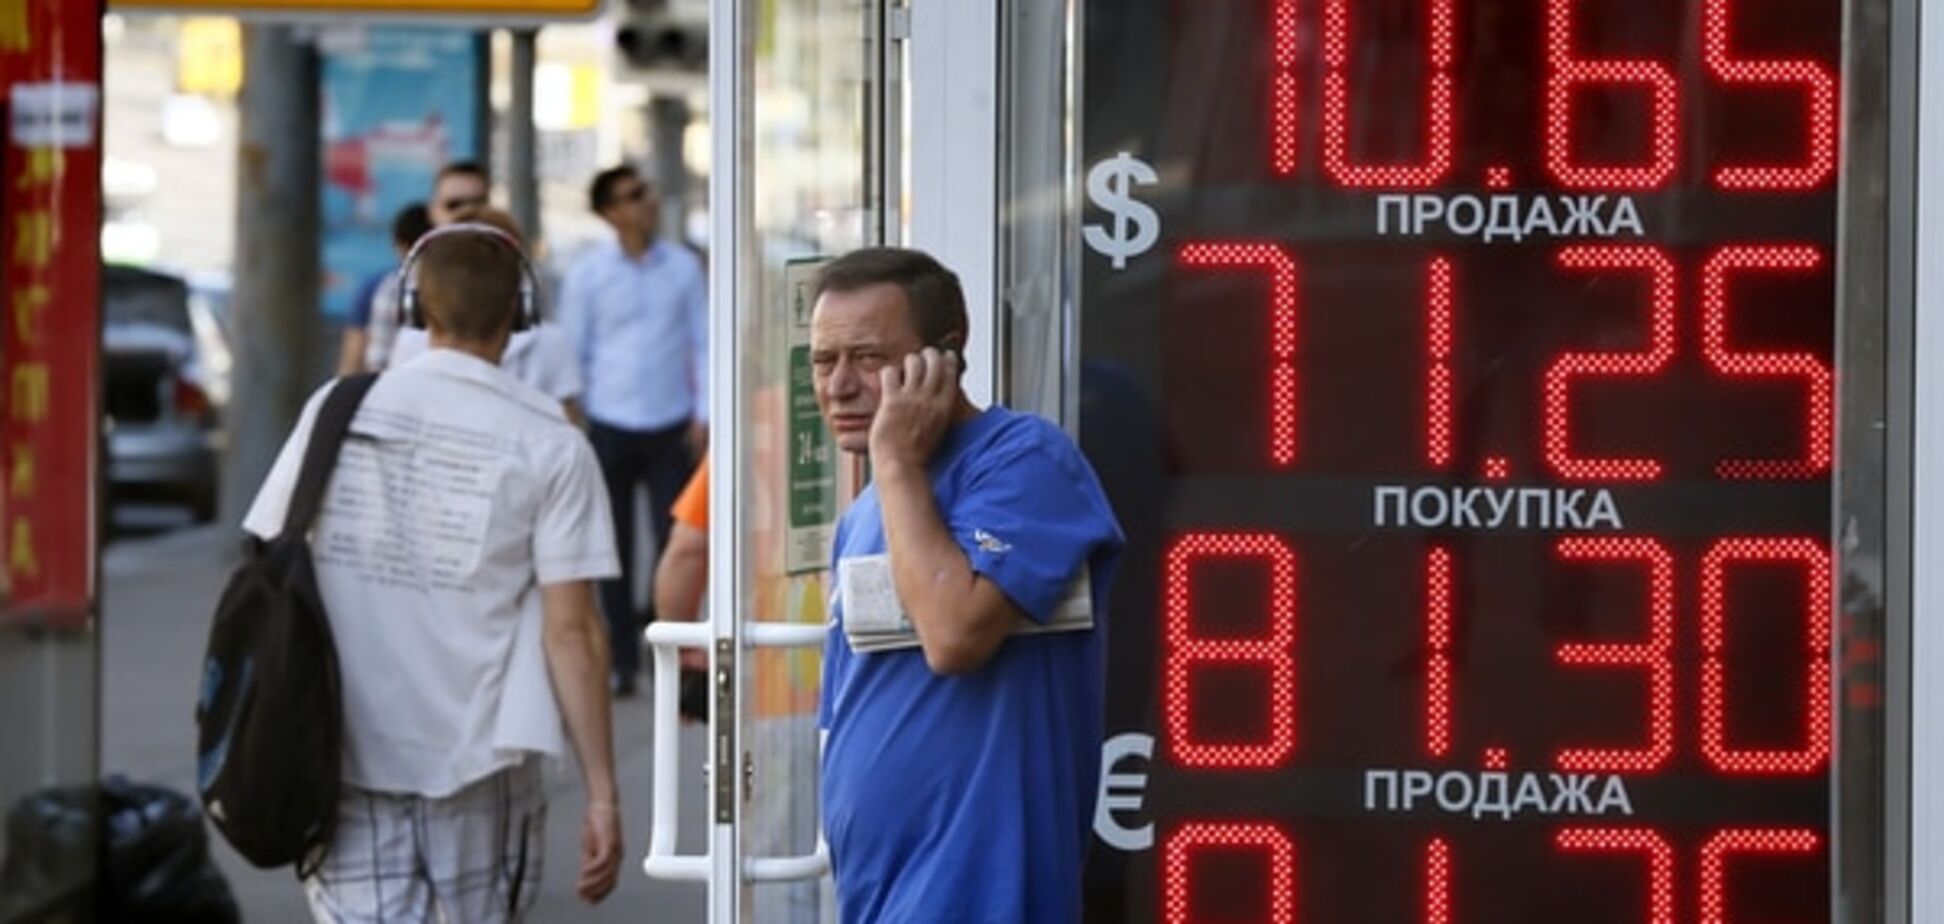 Росіян почали більше цікавити курс рубля і безробіття, а не 'бандерівці' - опитування